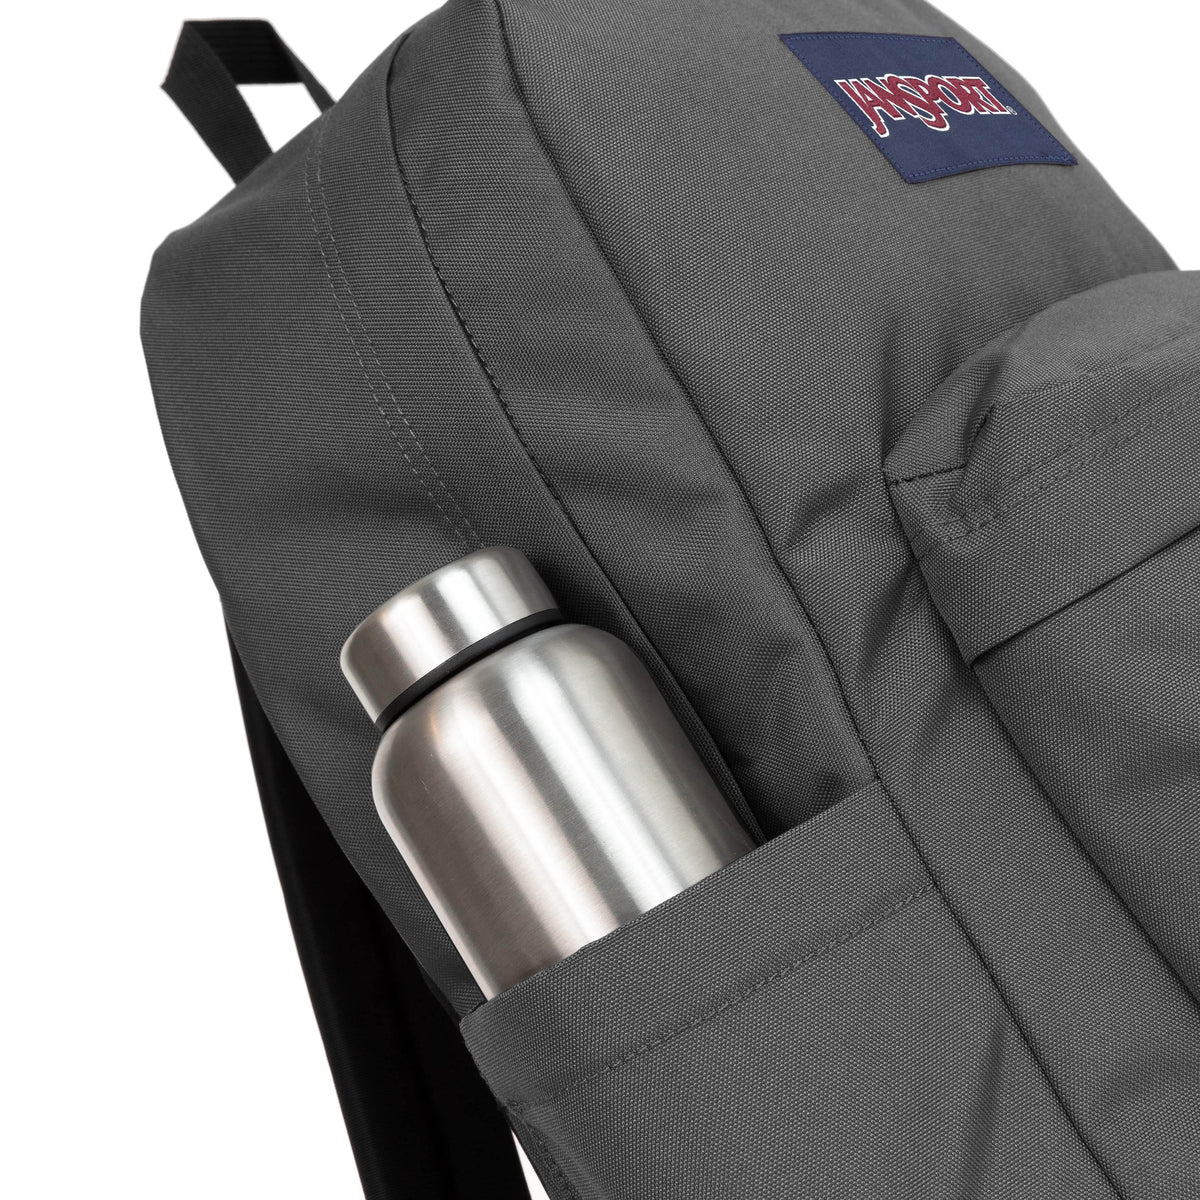 Jansport Superbreak Plus Backpack - Graphite Grey